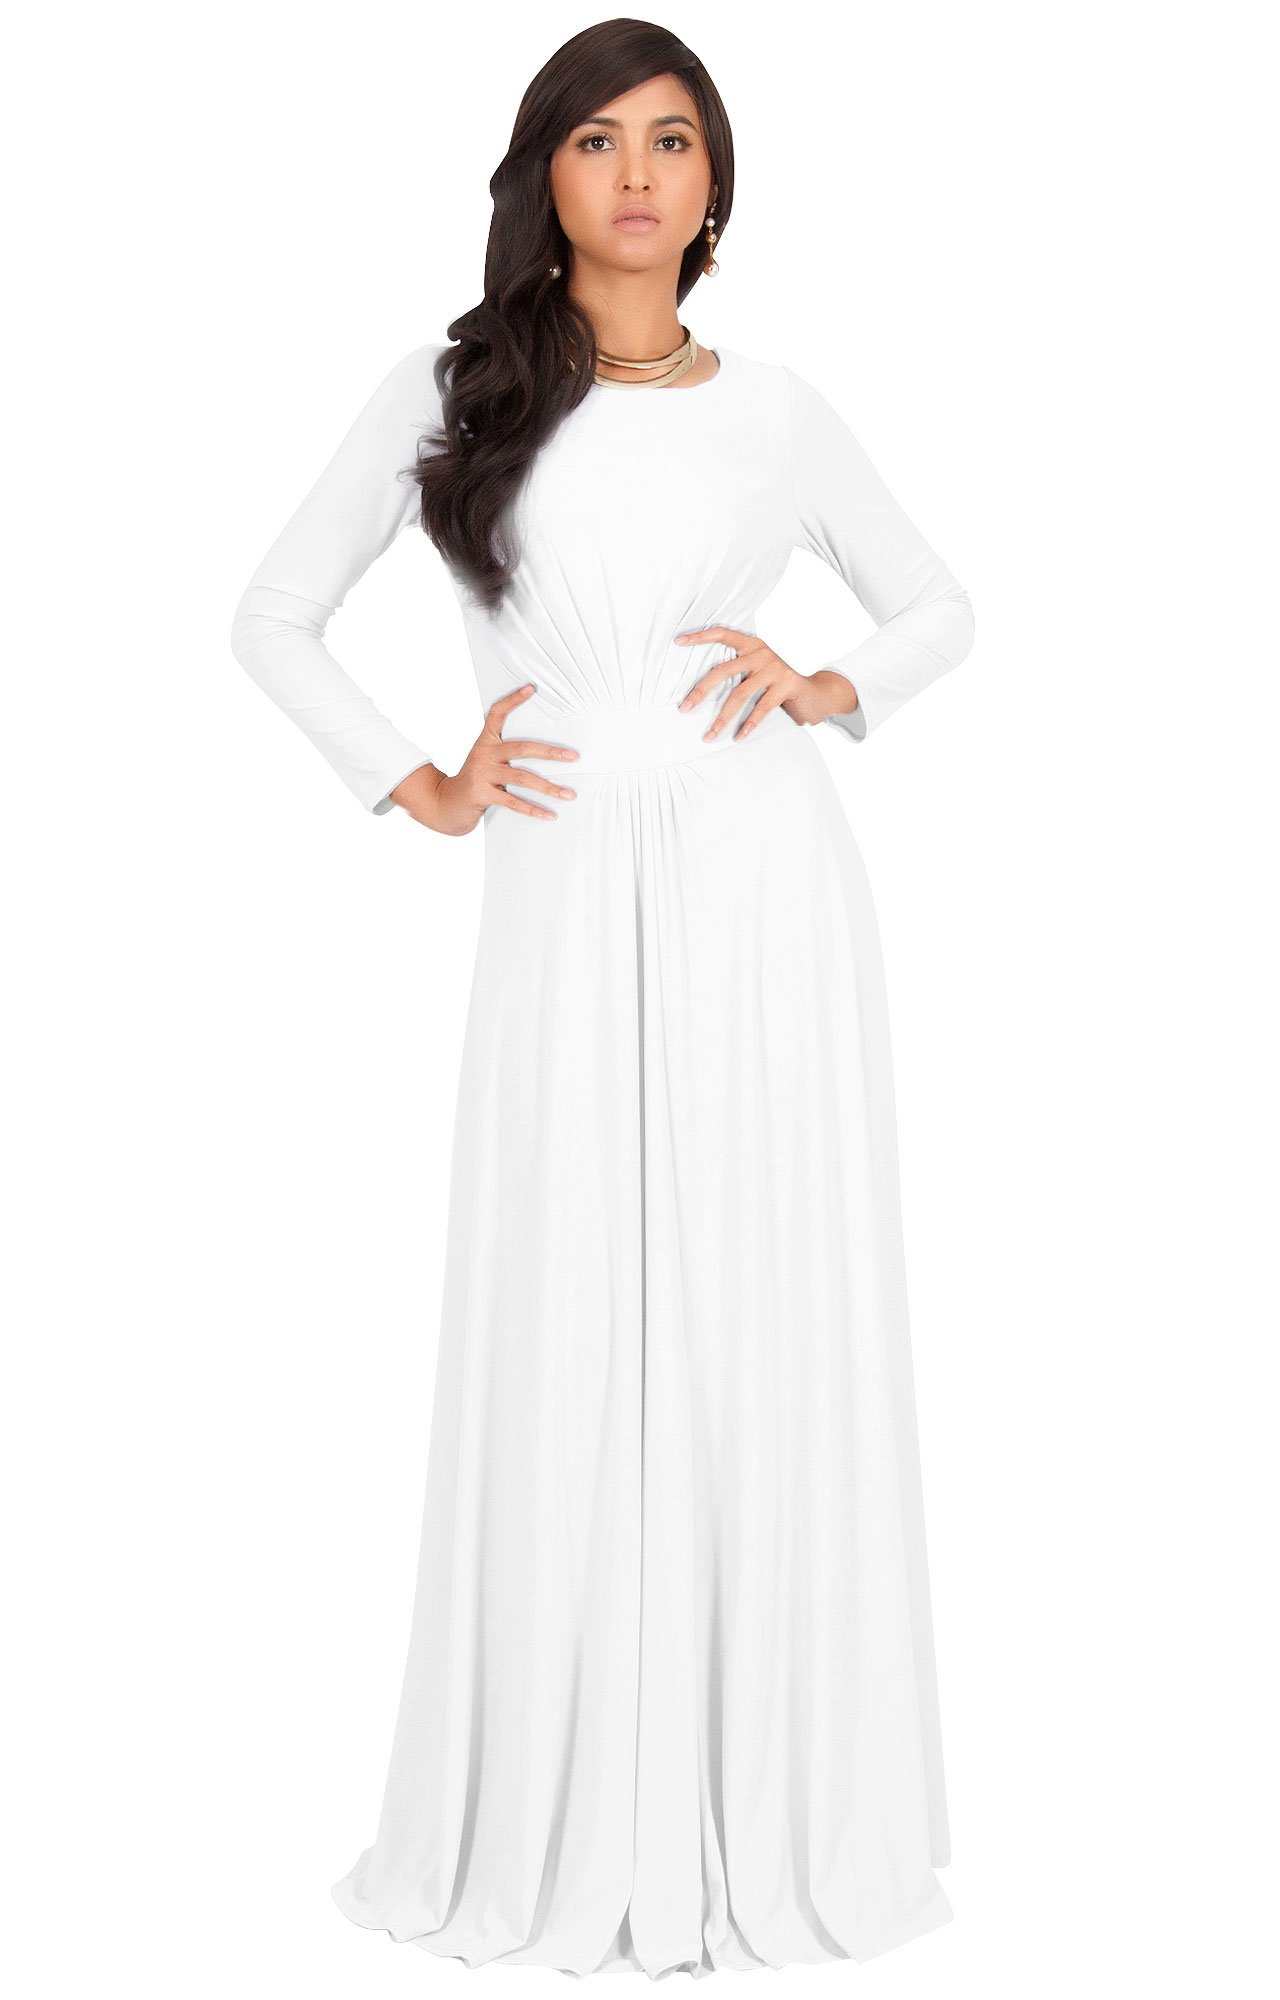 A person wearing a white dress.